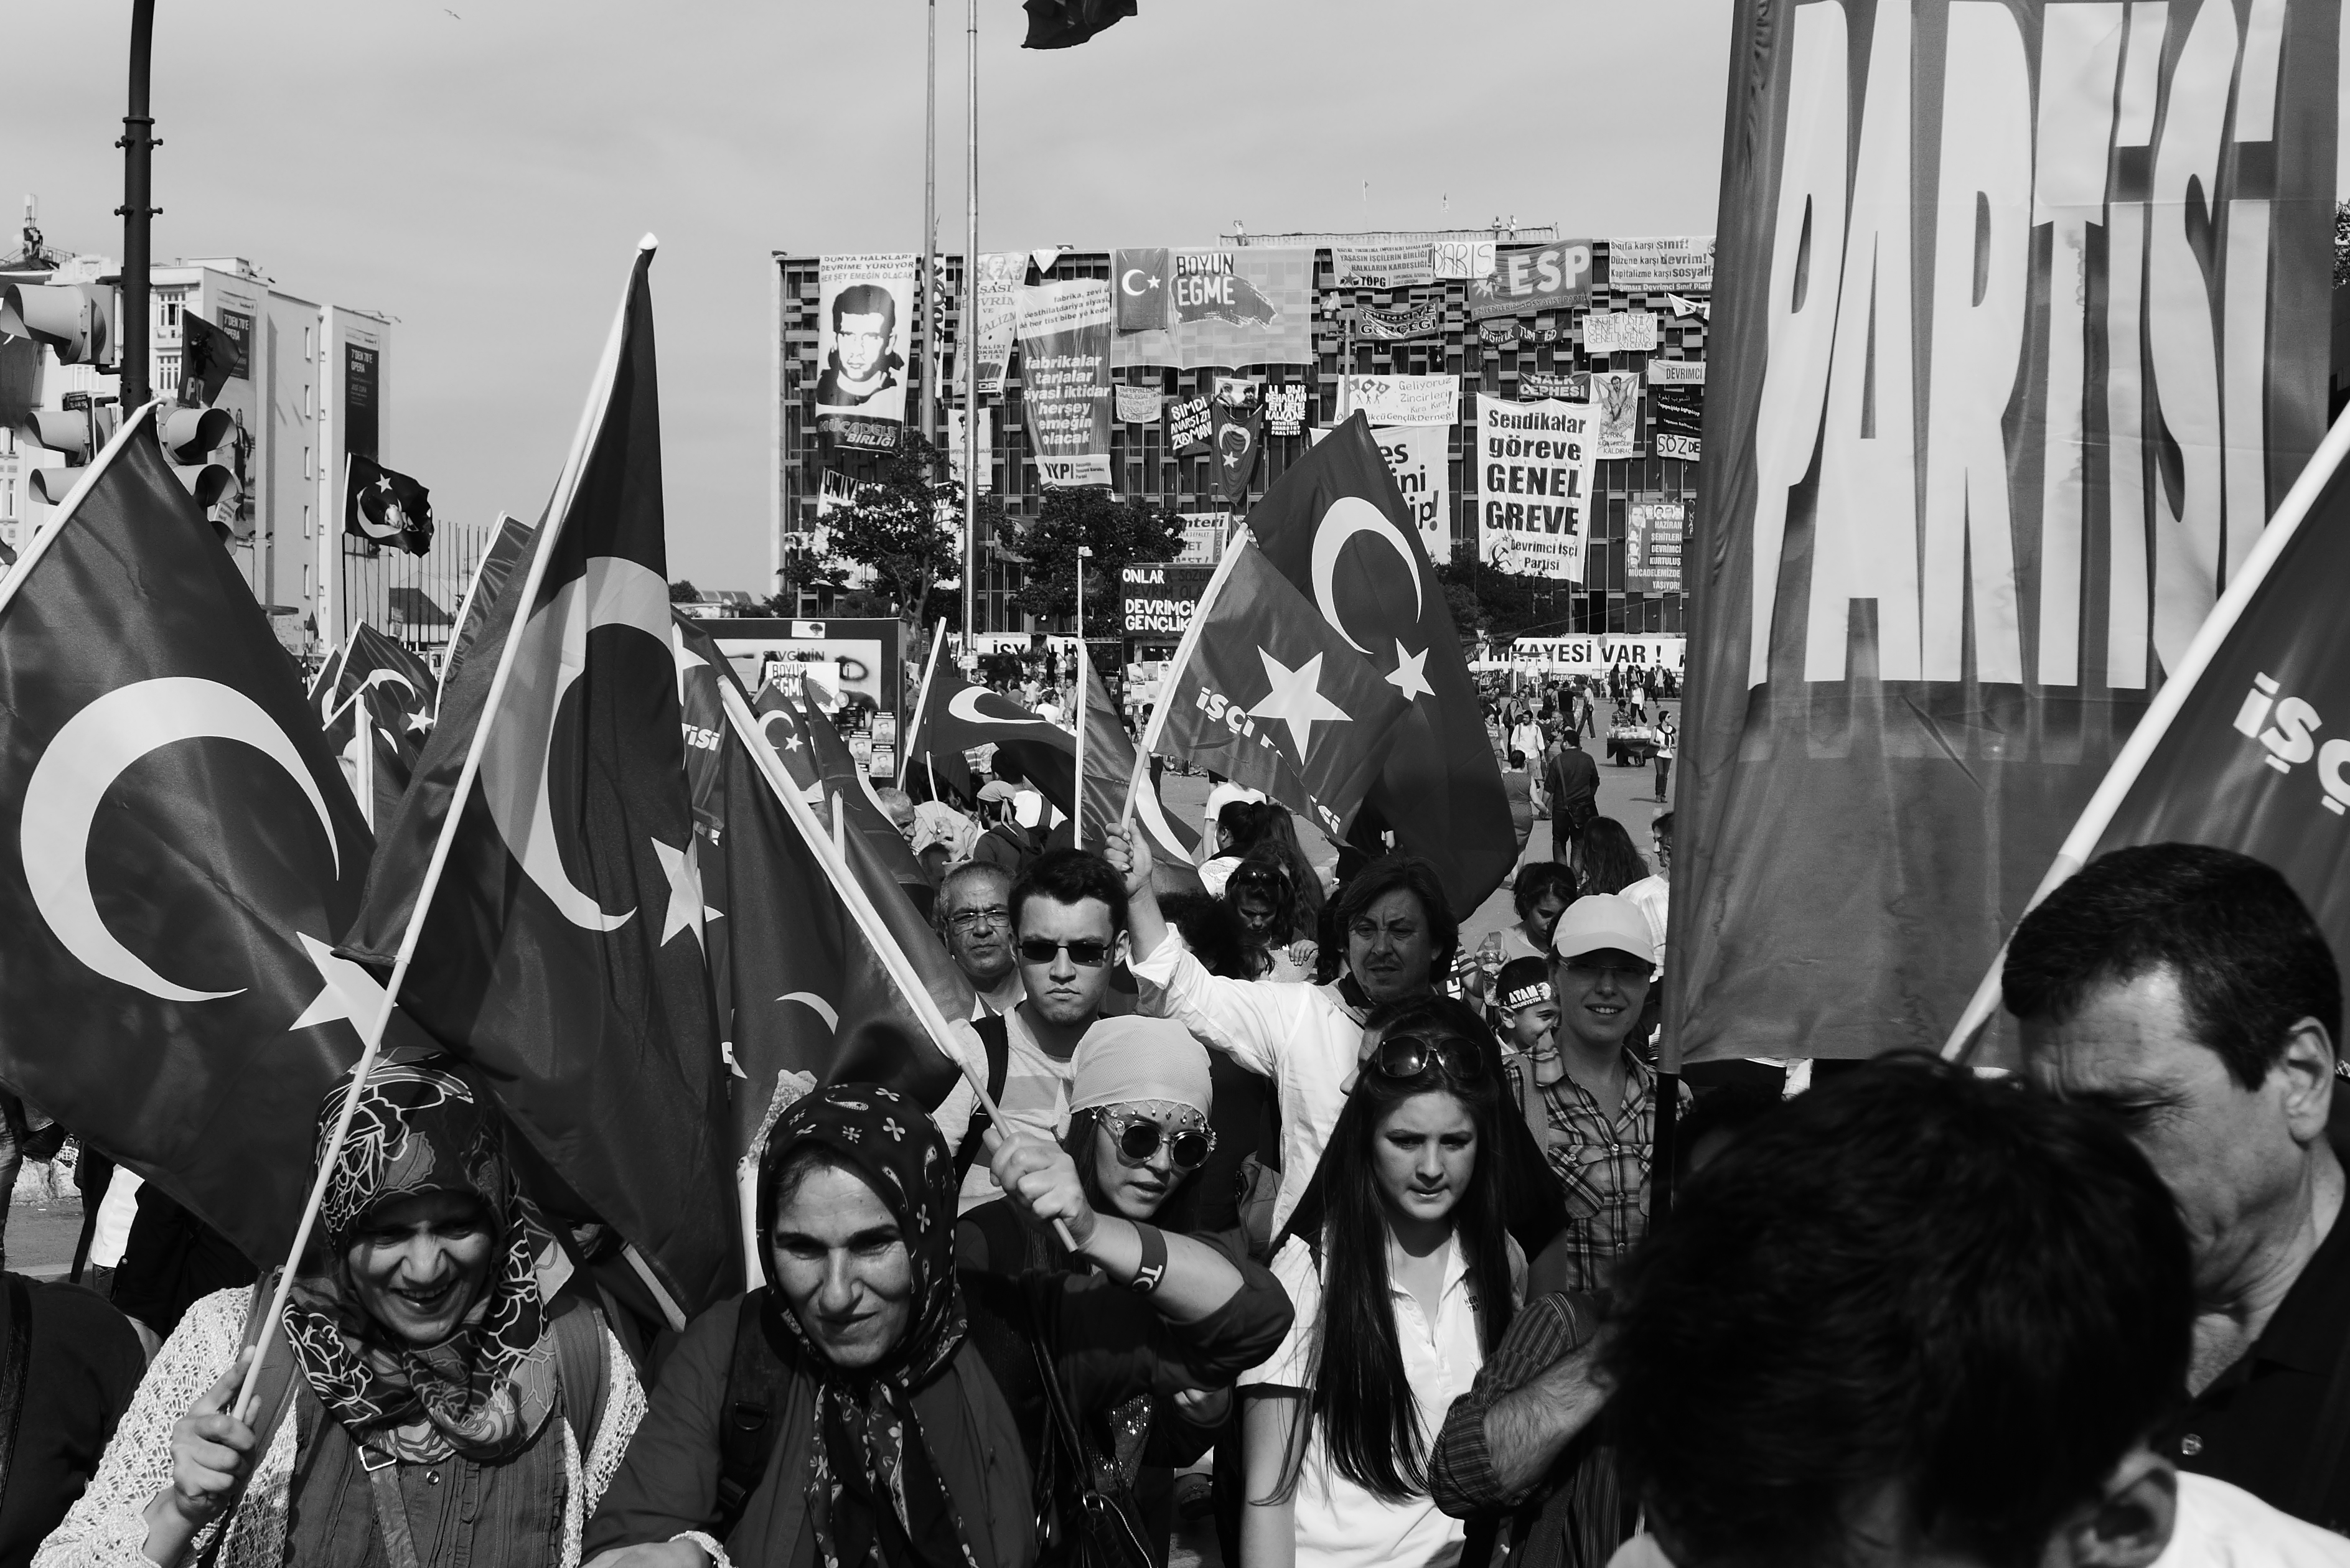 Es geht nicht mehr alleine um den Gezi-Park: Demonstriert wird jetzt gegen nahezu alles, wofür Erdogans Regierung steht